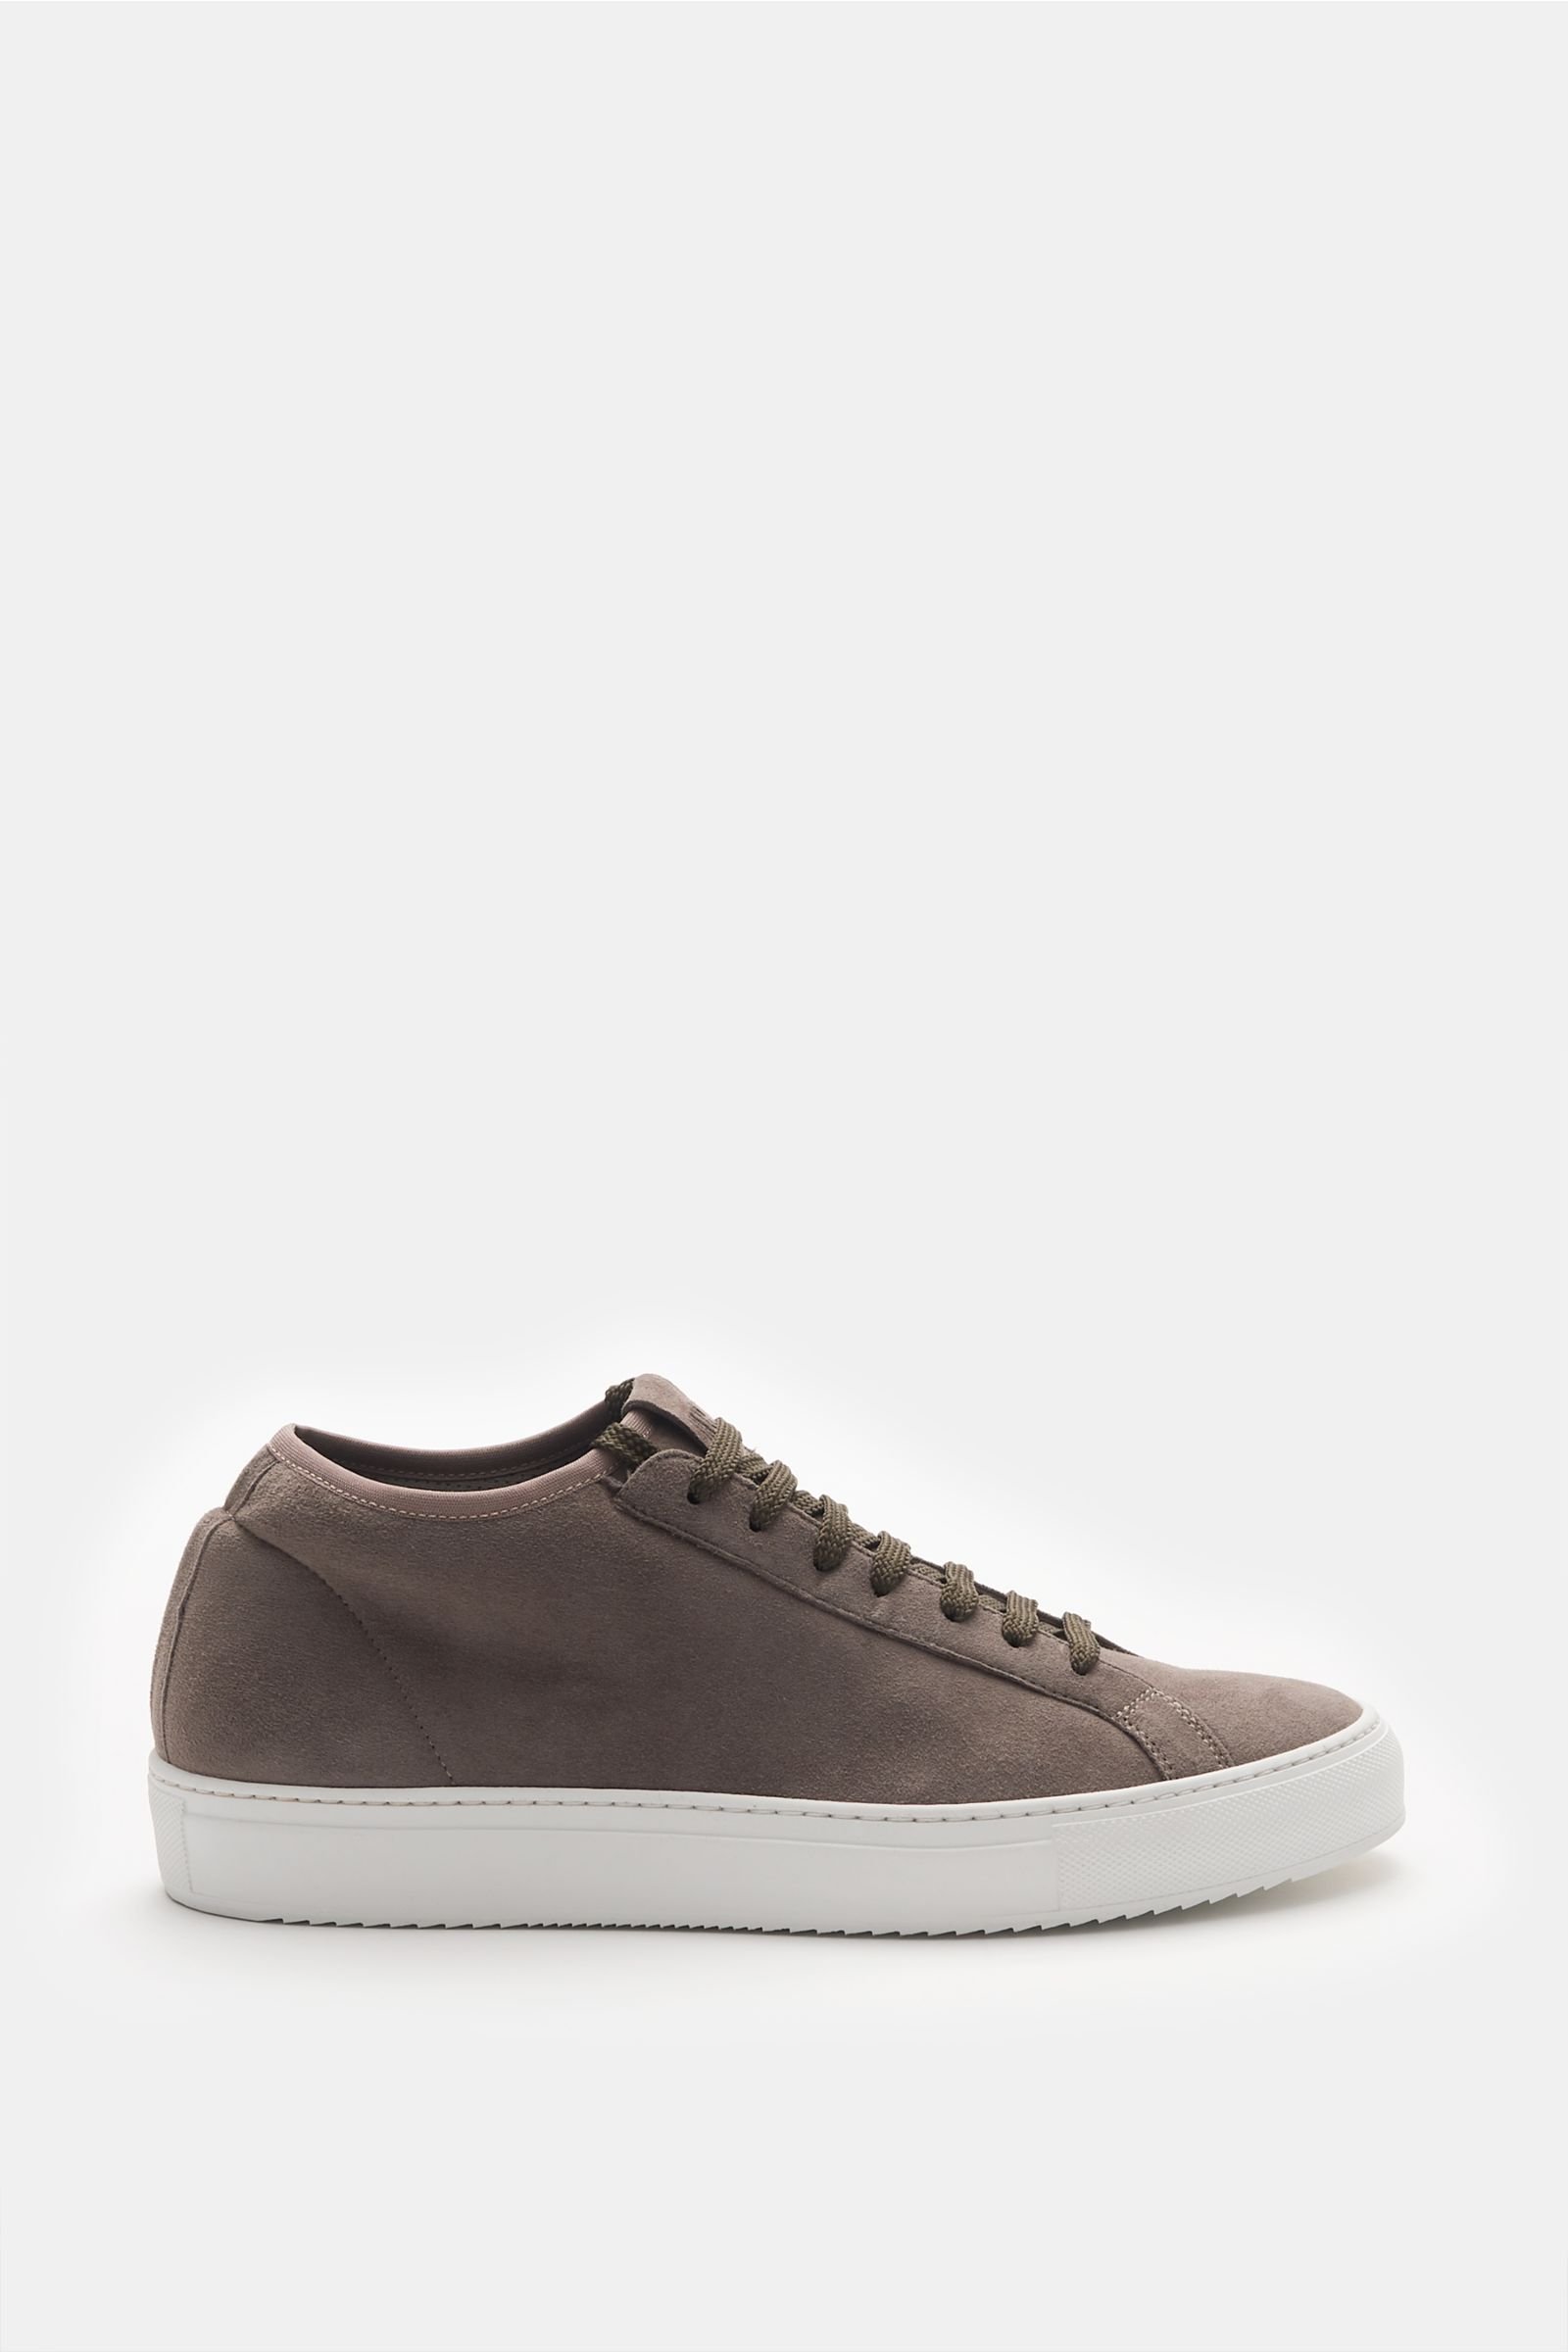 FABIANO RICCI sneakers grey-brown | BRAUN Hamburg